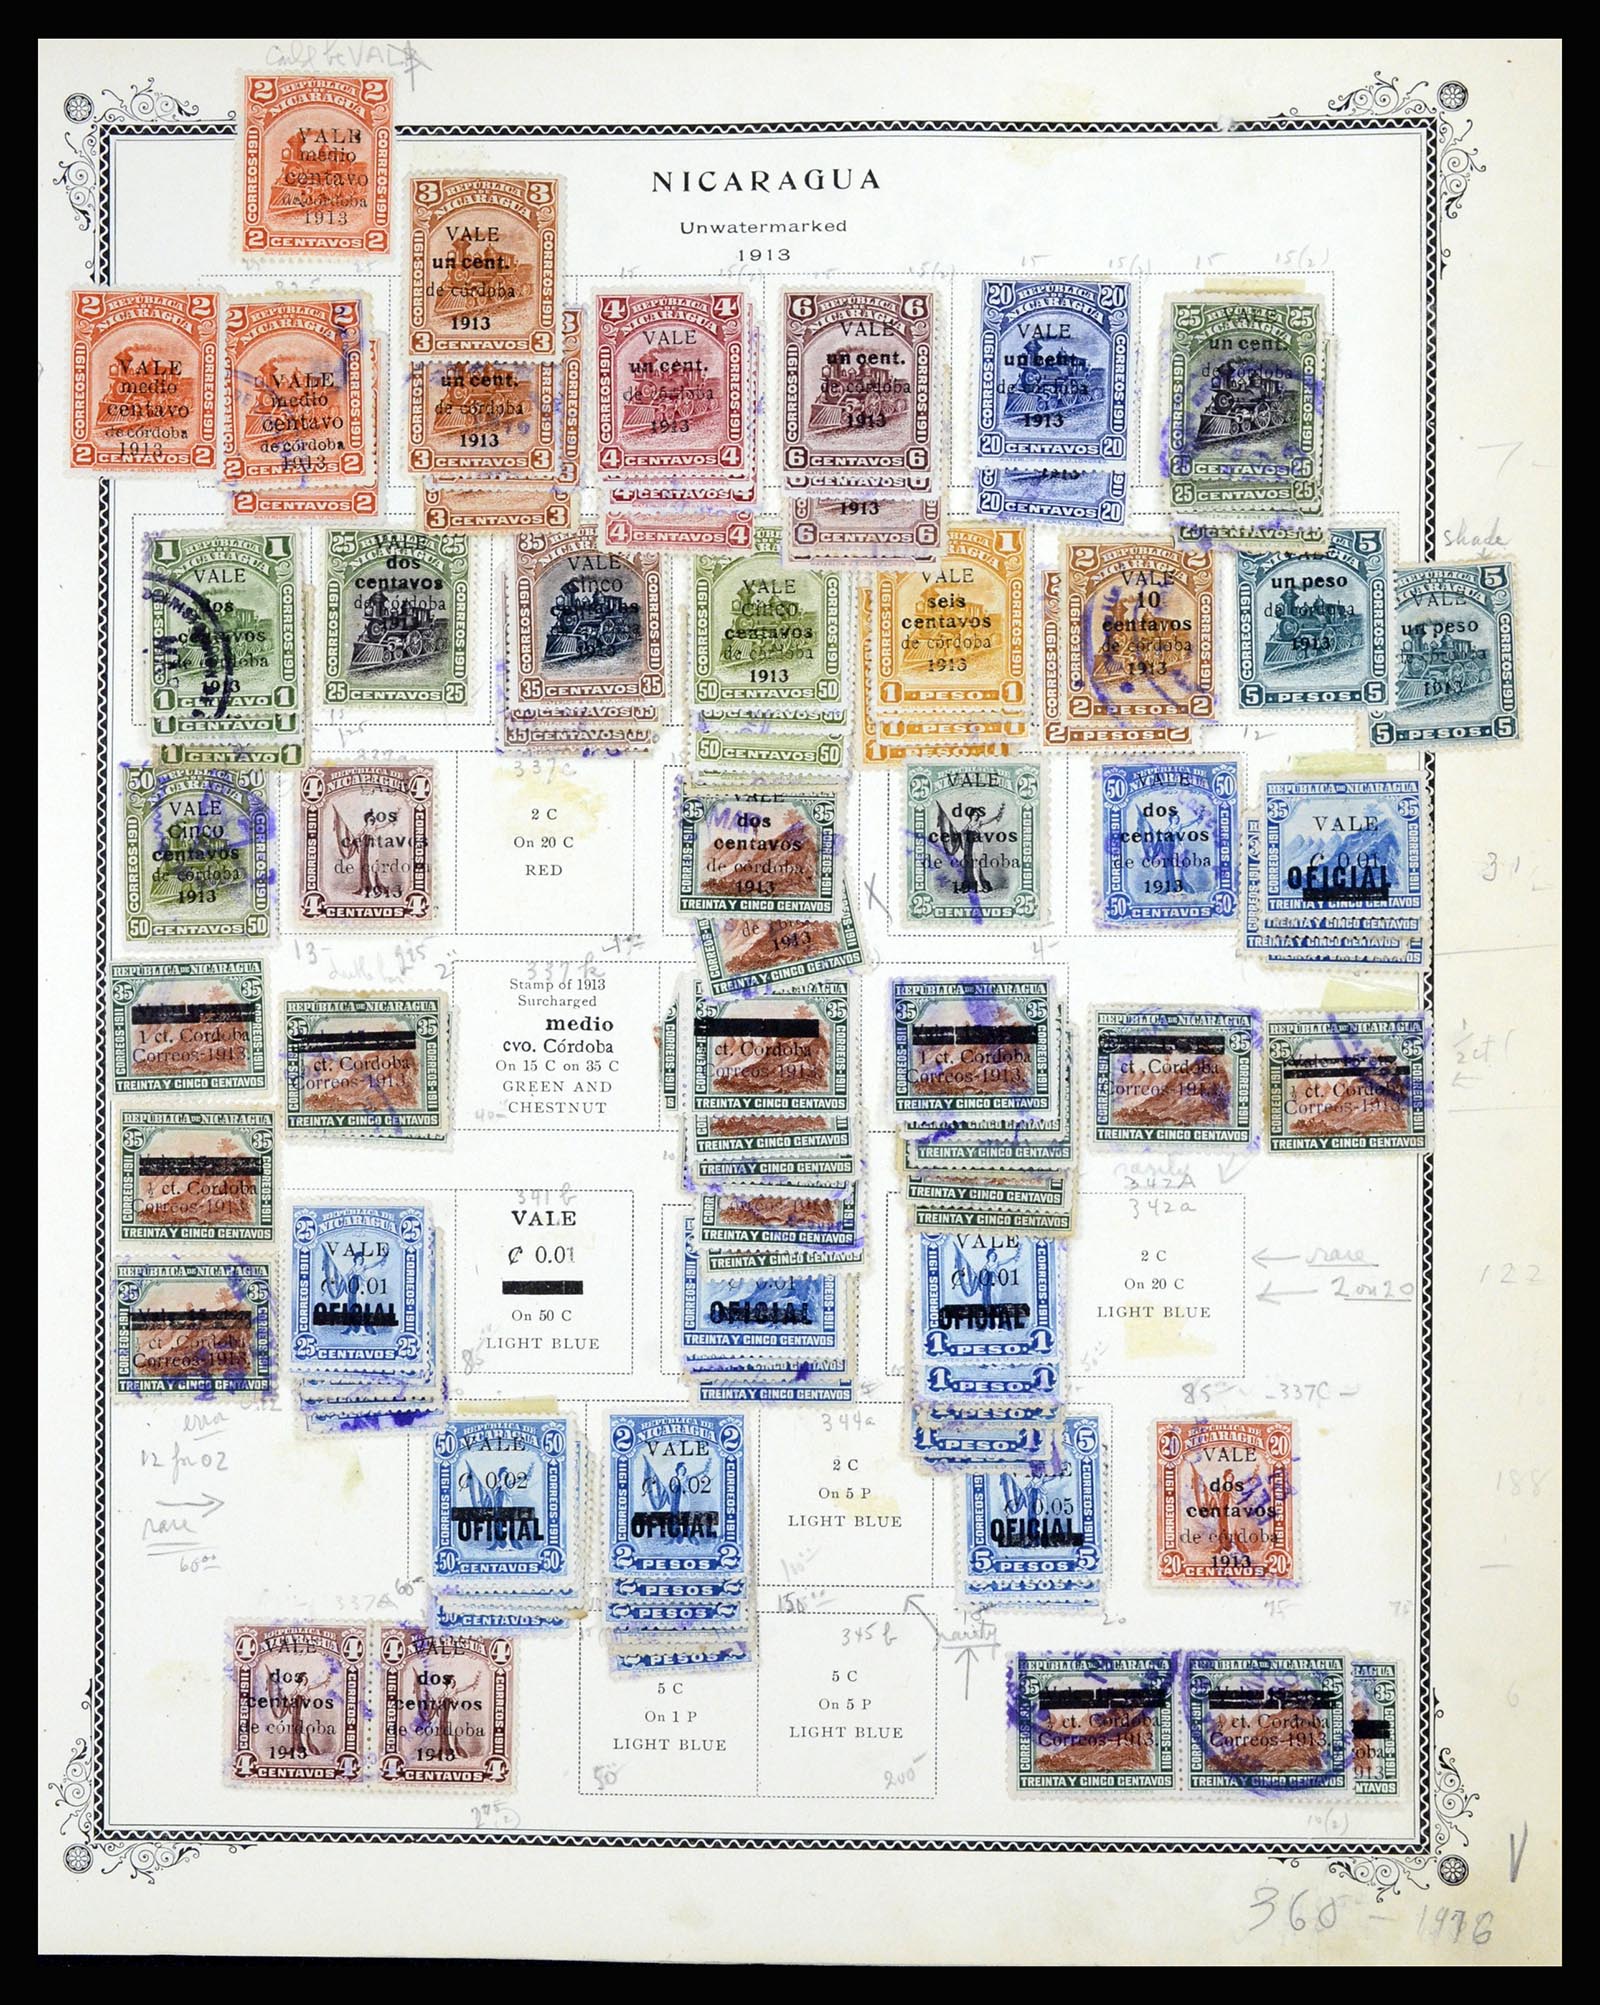 36494 033 - Stamp collection 36494 Nicaragua 1902-1945.